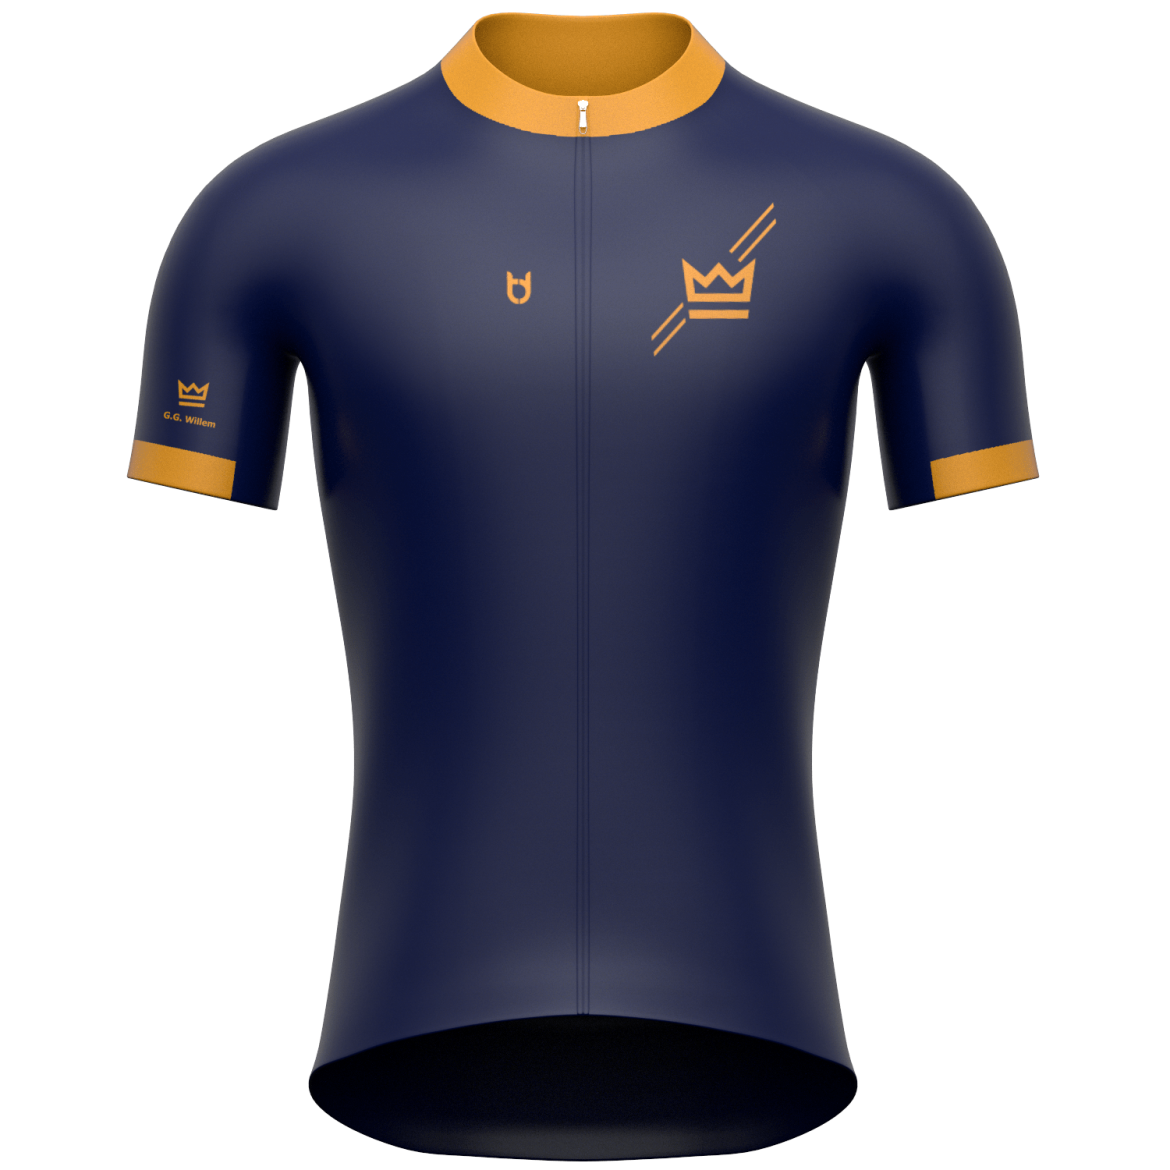 Td sportswear custom cycling jersey front